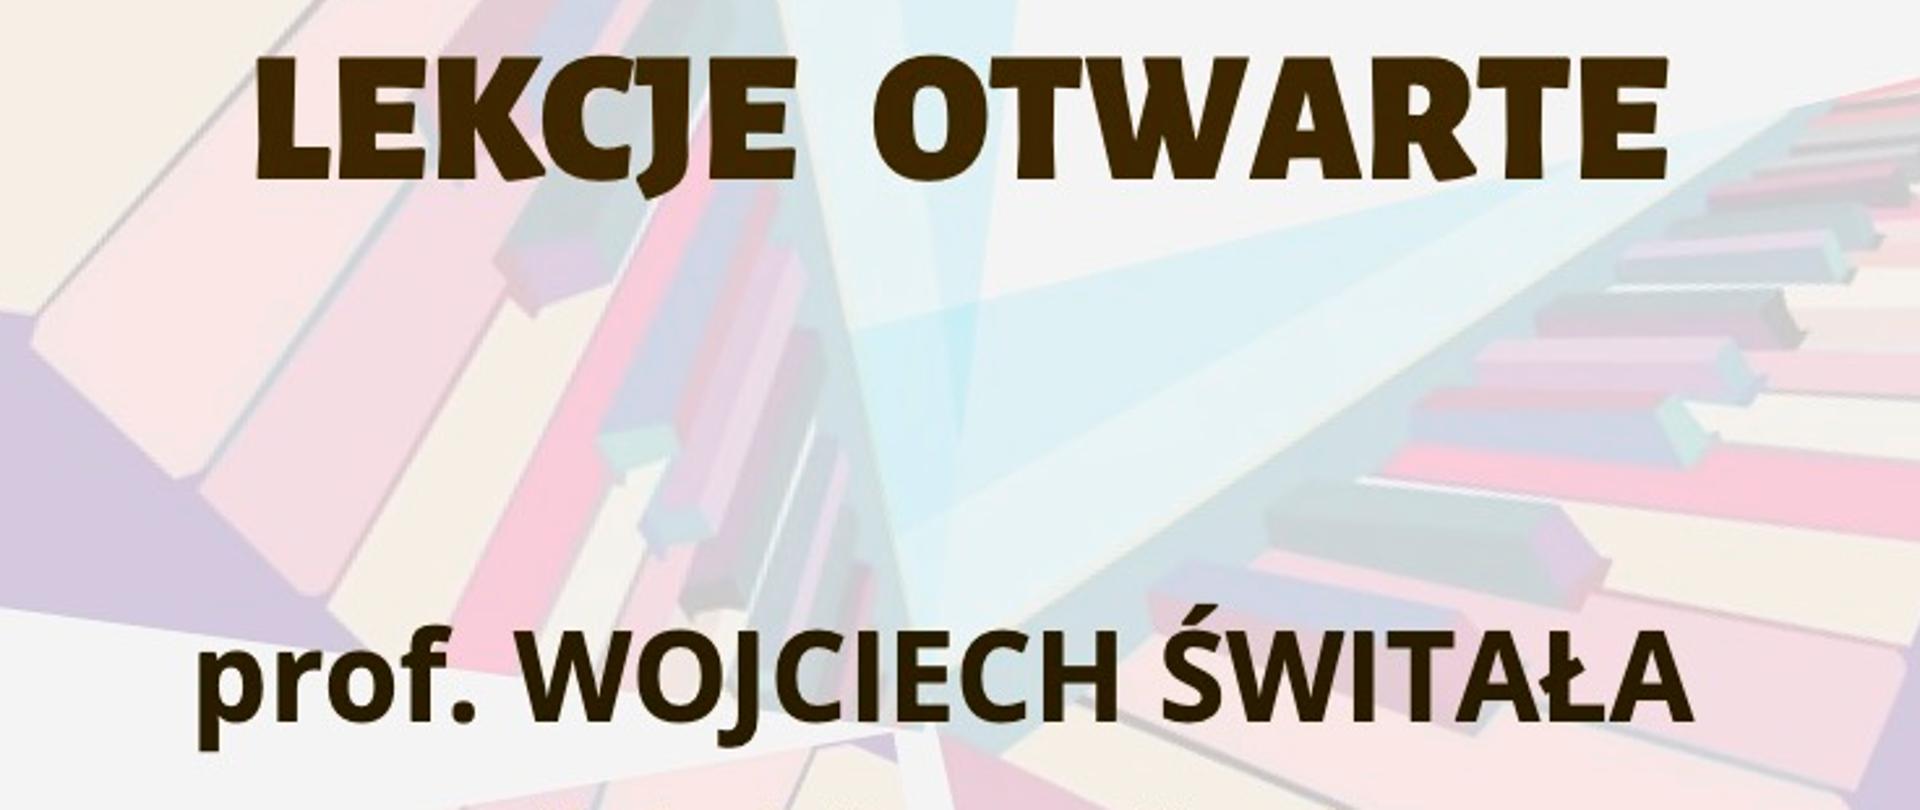 Afisz - Lekcje otwarte - prof. Wojciech Świtała